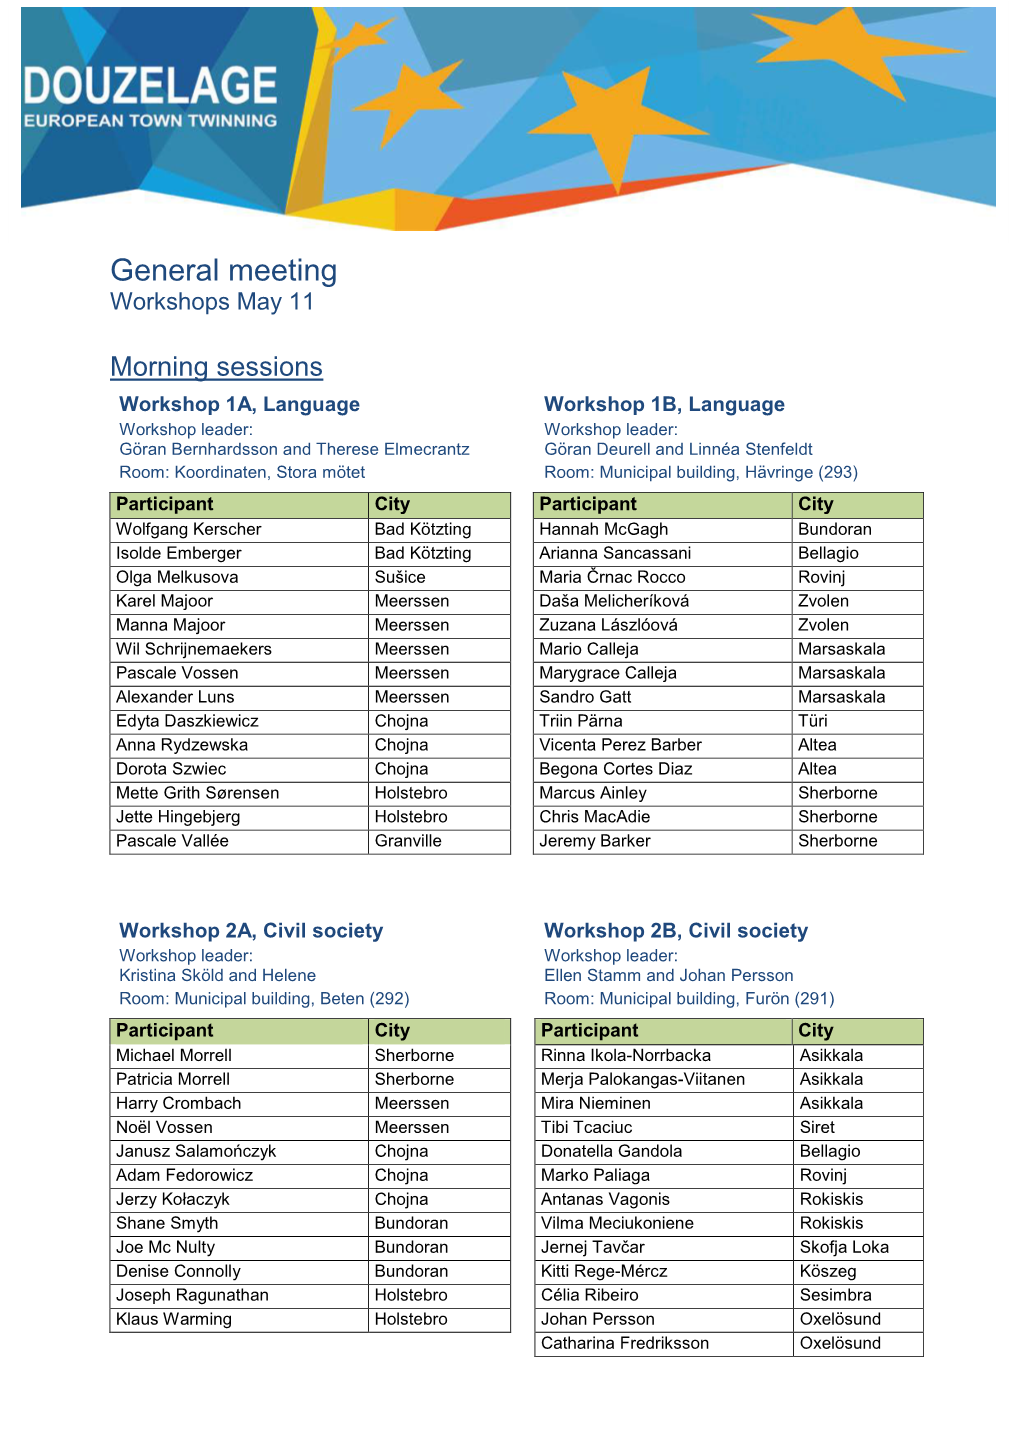 General Meeting Workshops May 11